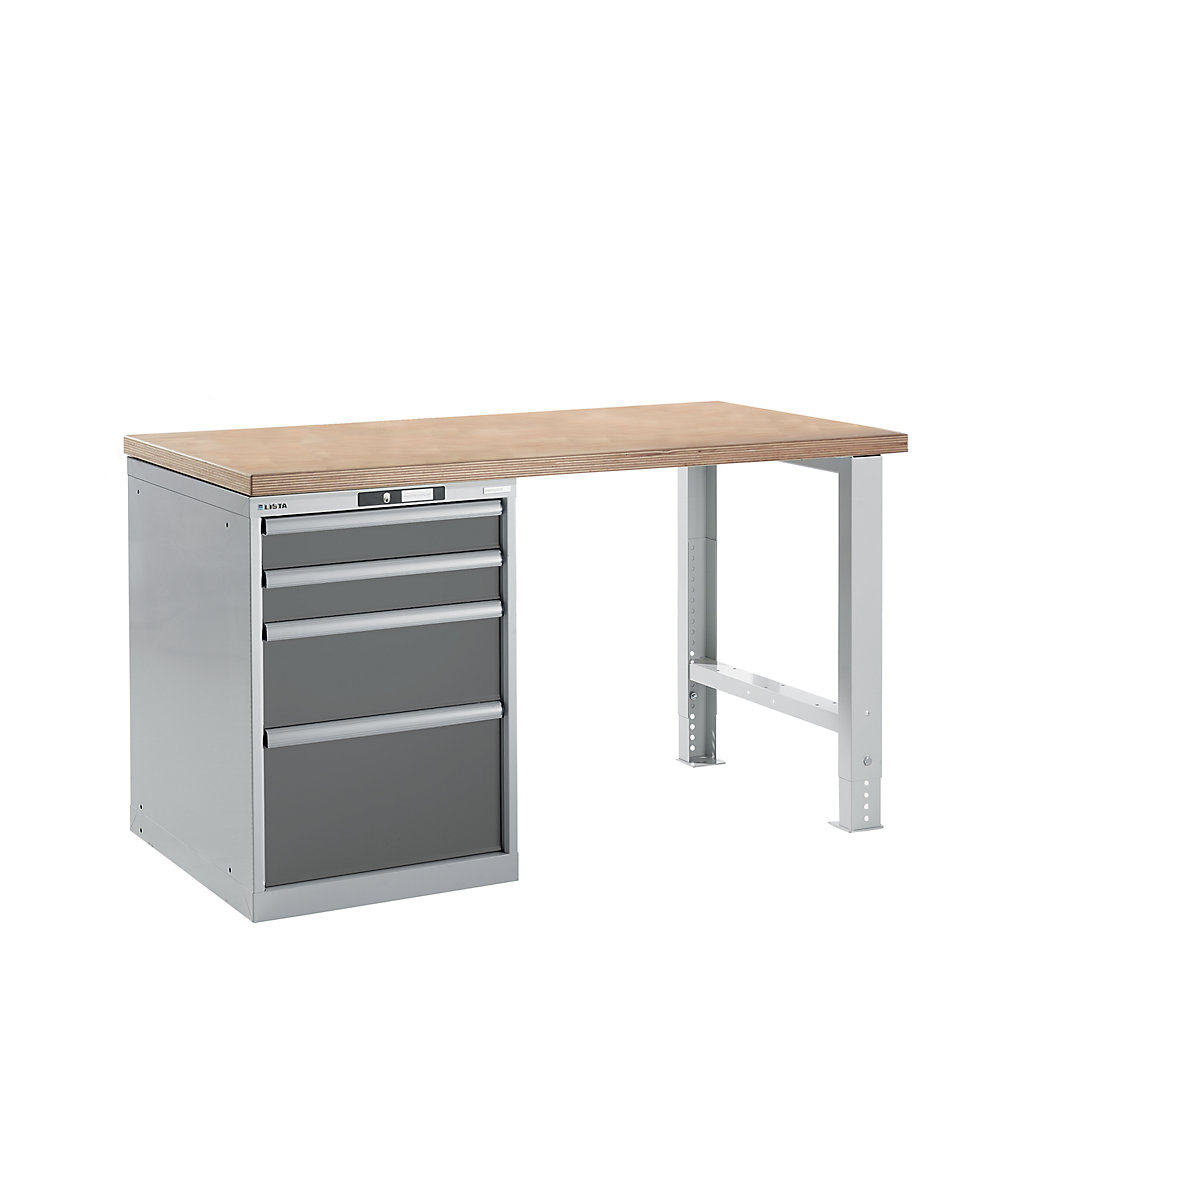 Dílenský stůl ve stavebnicovém systému – LISTA, výška 840 mm, podstavná skříňka, 4 zásuvky, šedá metalíza, šířka stolu 1500 mm-16